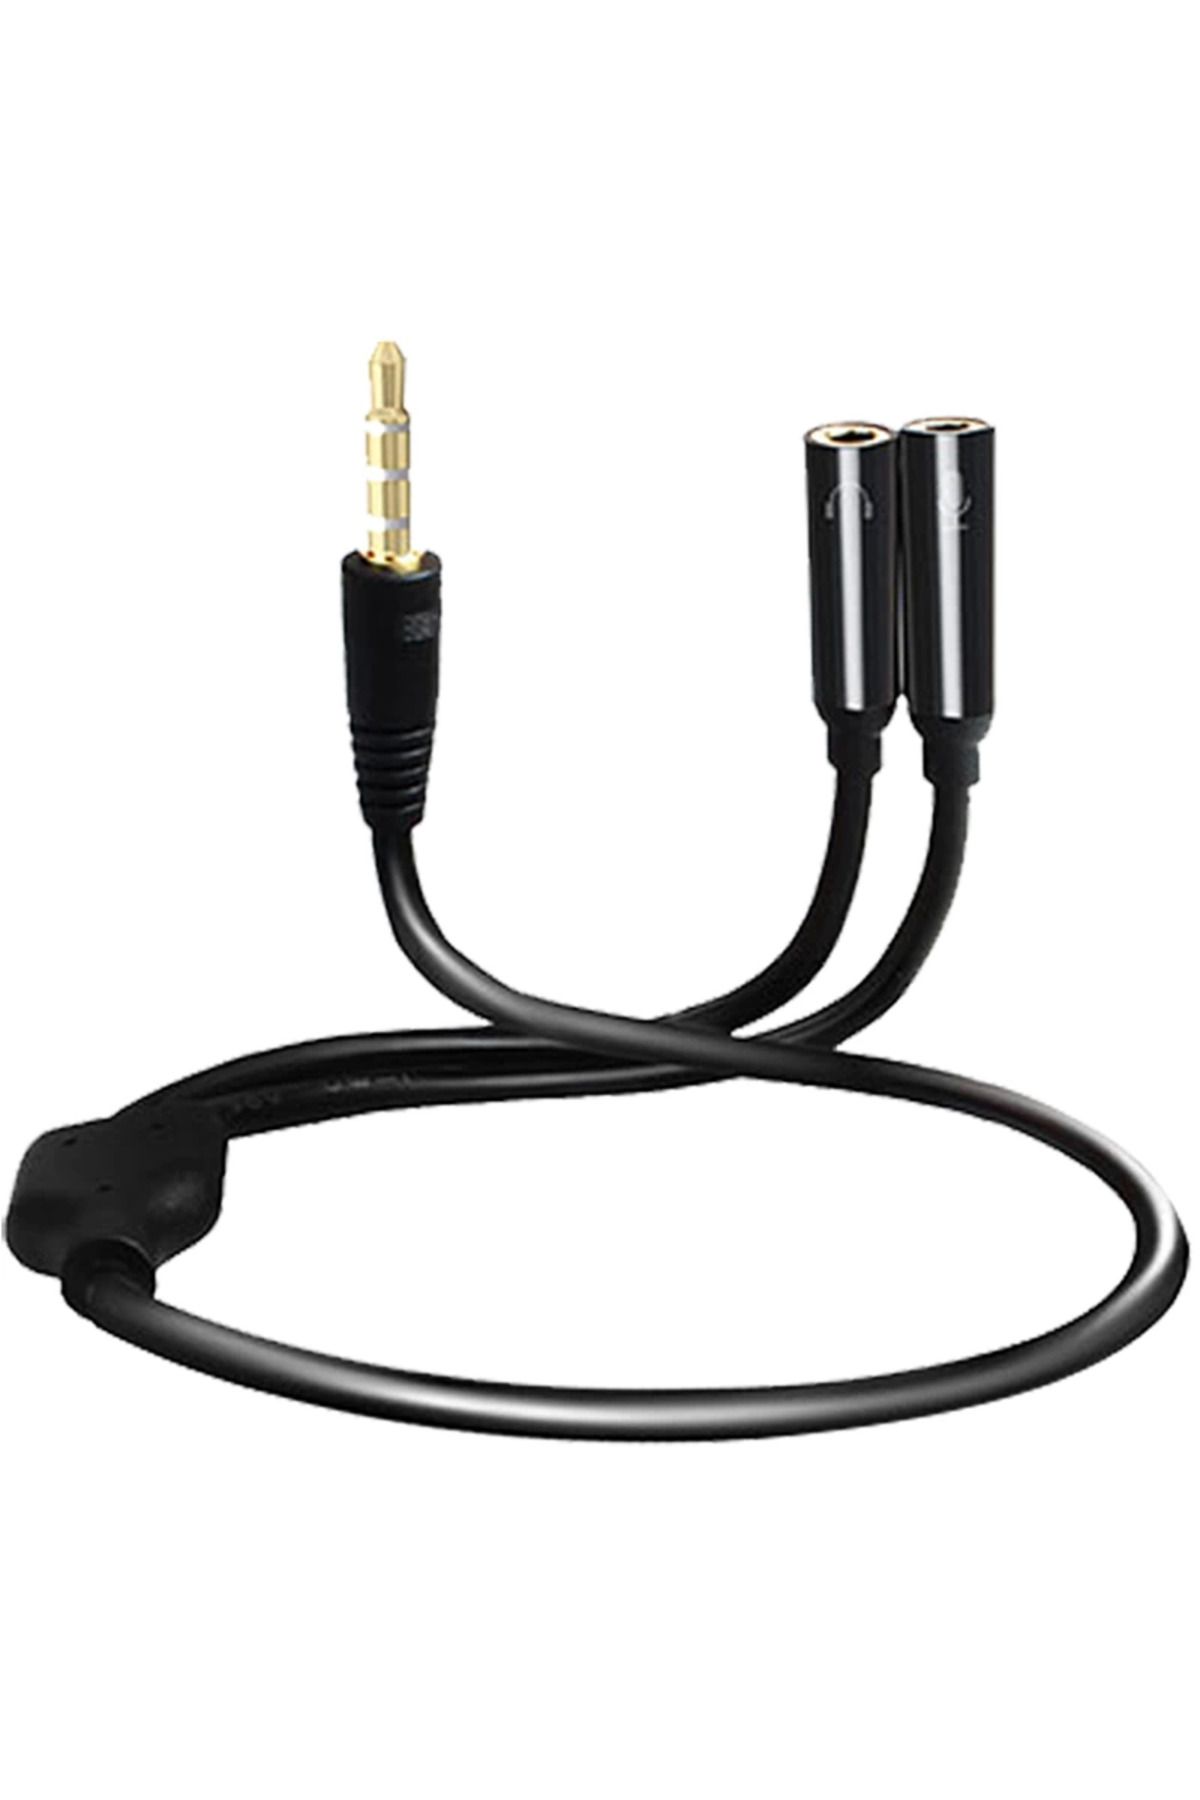 Lisinya S-lınk Sl-302ms 3.5 Mm Stereo Kulaklık + Hoparlör Çoklayıcı Kablo ( Lisinya )